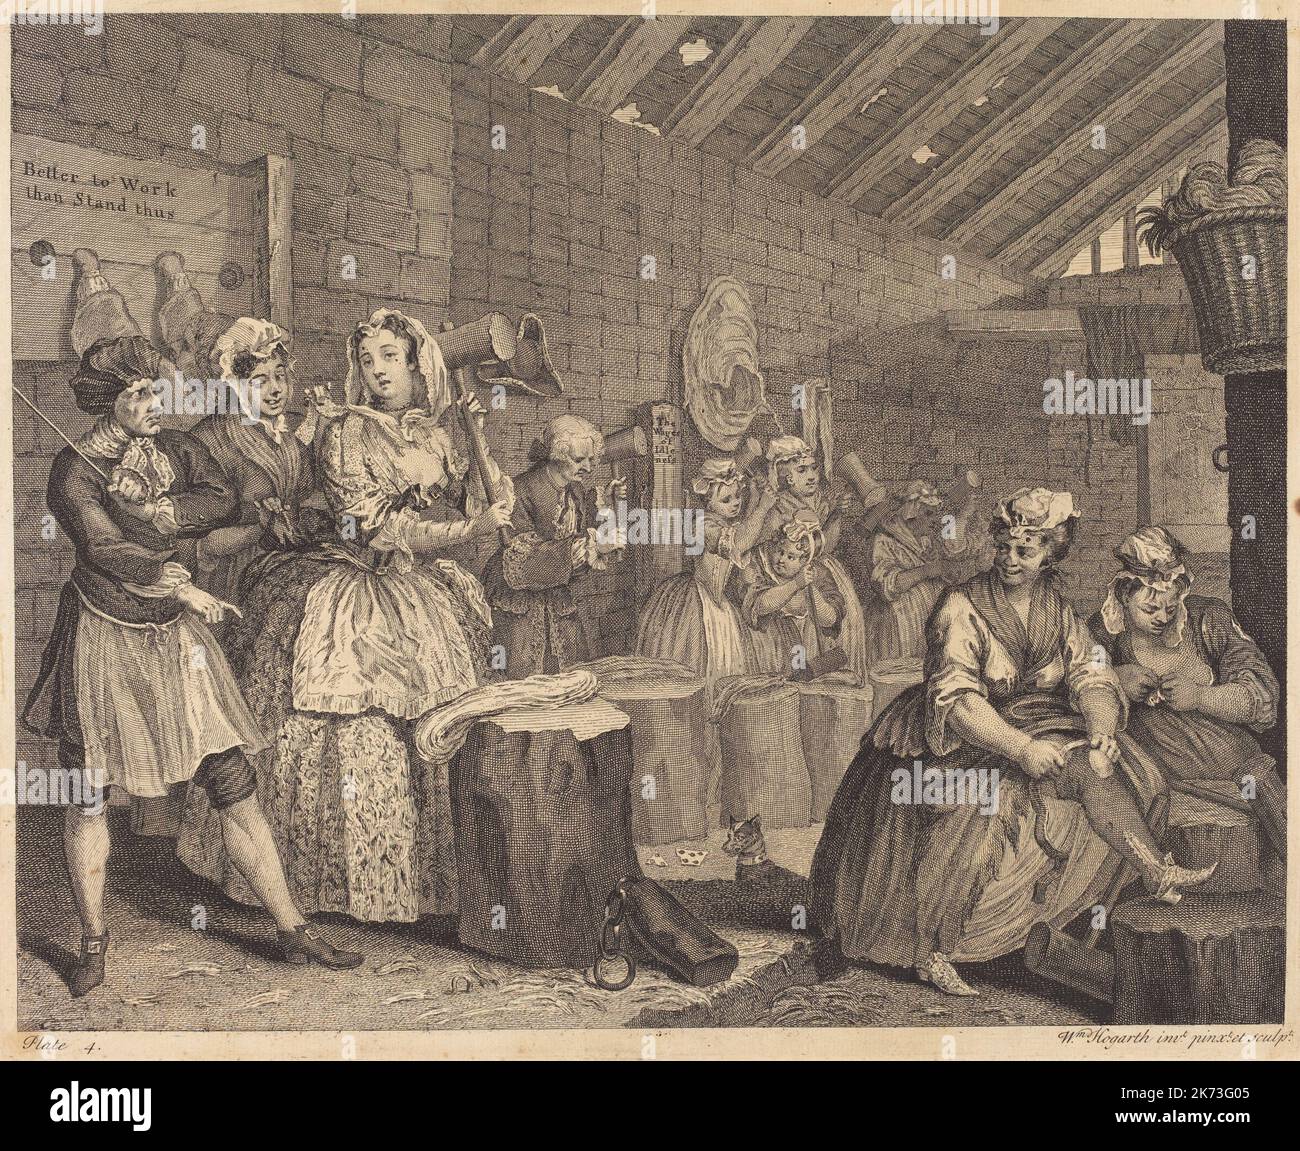 William Hogarth (1697 - 1764) peintre anglais, graveur, satiriste illustré - Un progrès de Harlot Banque D'Images